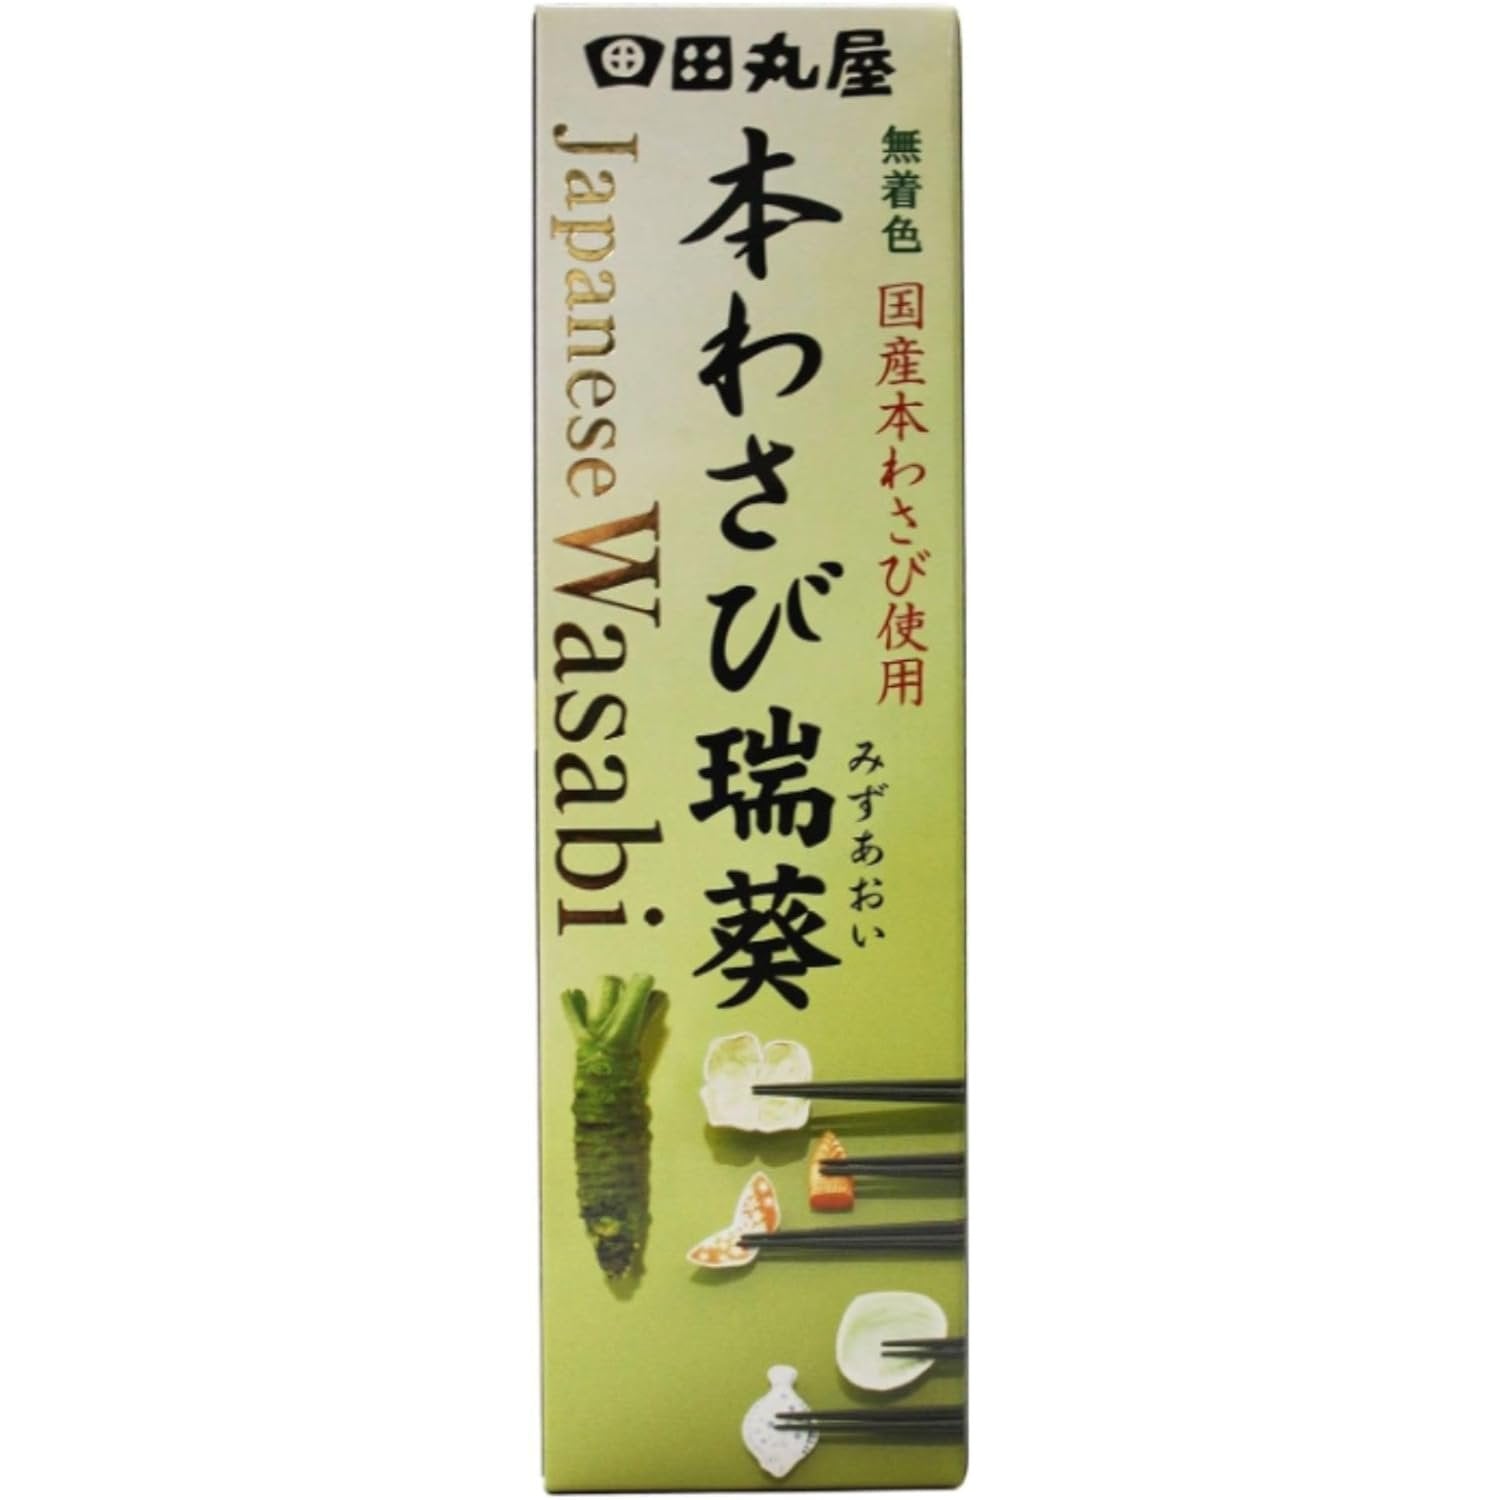 Tamaruya Hon Wasabi Real Japanese Wasabi Paste 42g